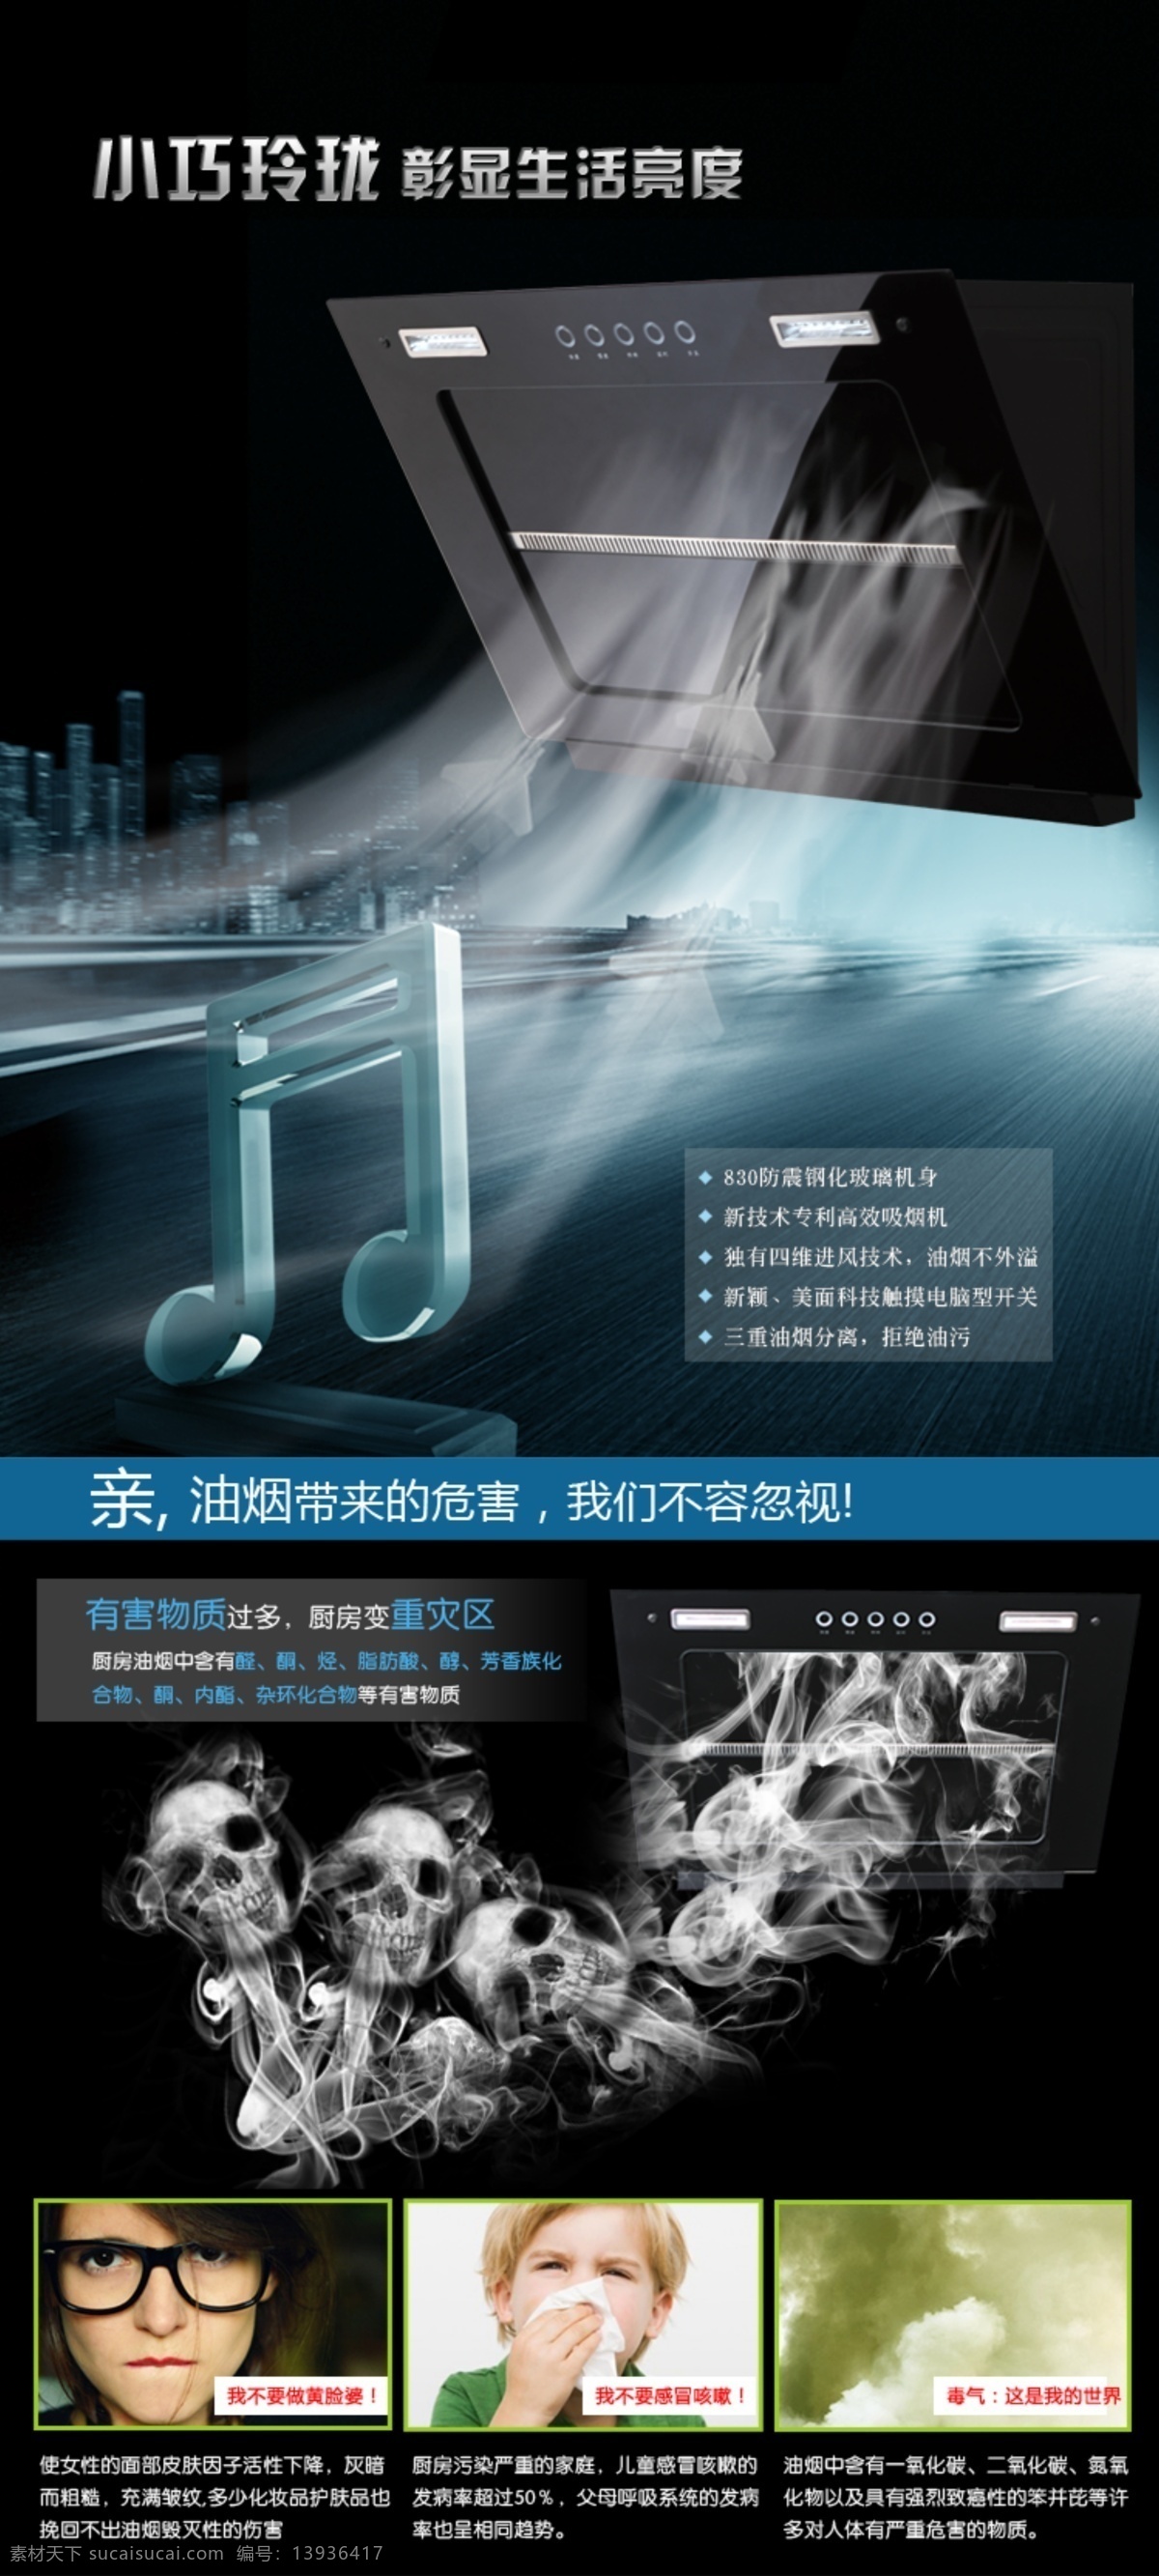 吸油烟机 淘宝烟机背景 淘宝海报 淘宝 宝贝描述 音乐符号 吸烟危害 中文模板 网页模板 源文件